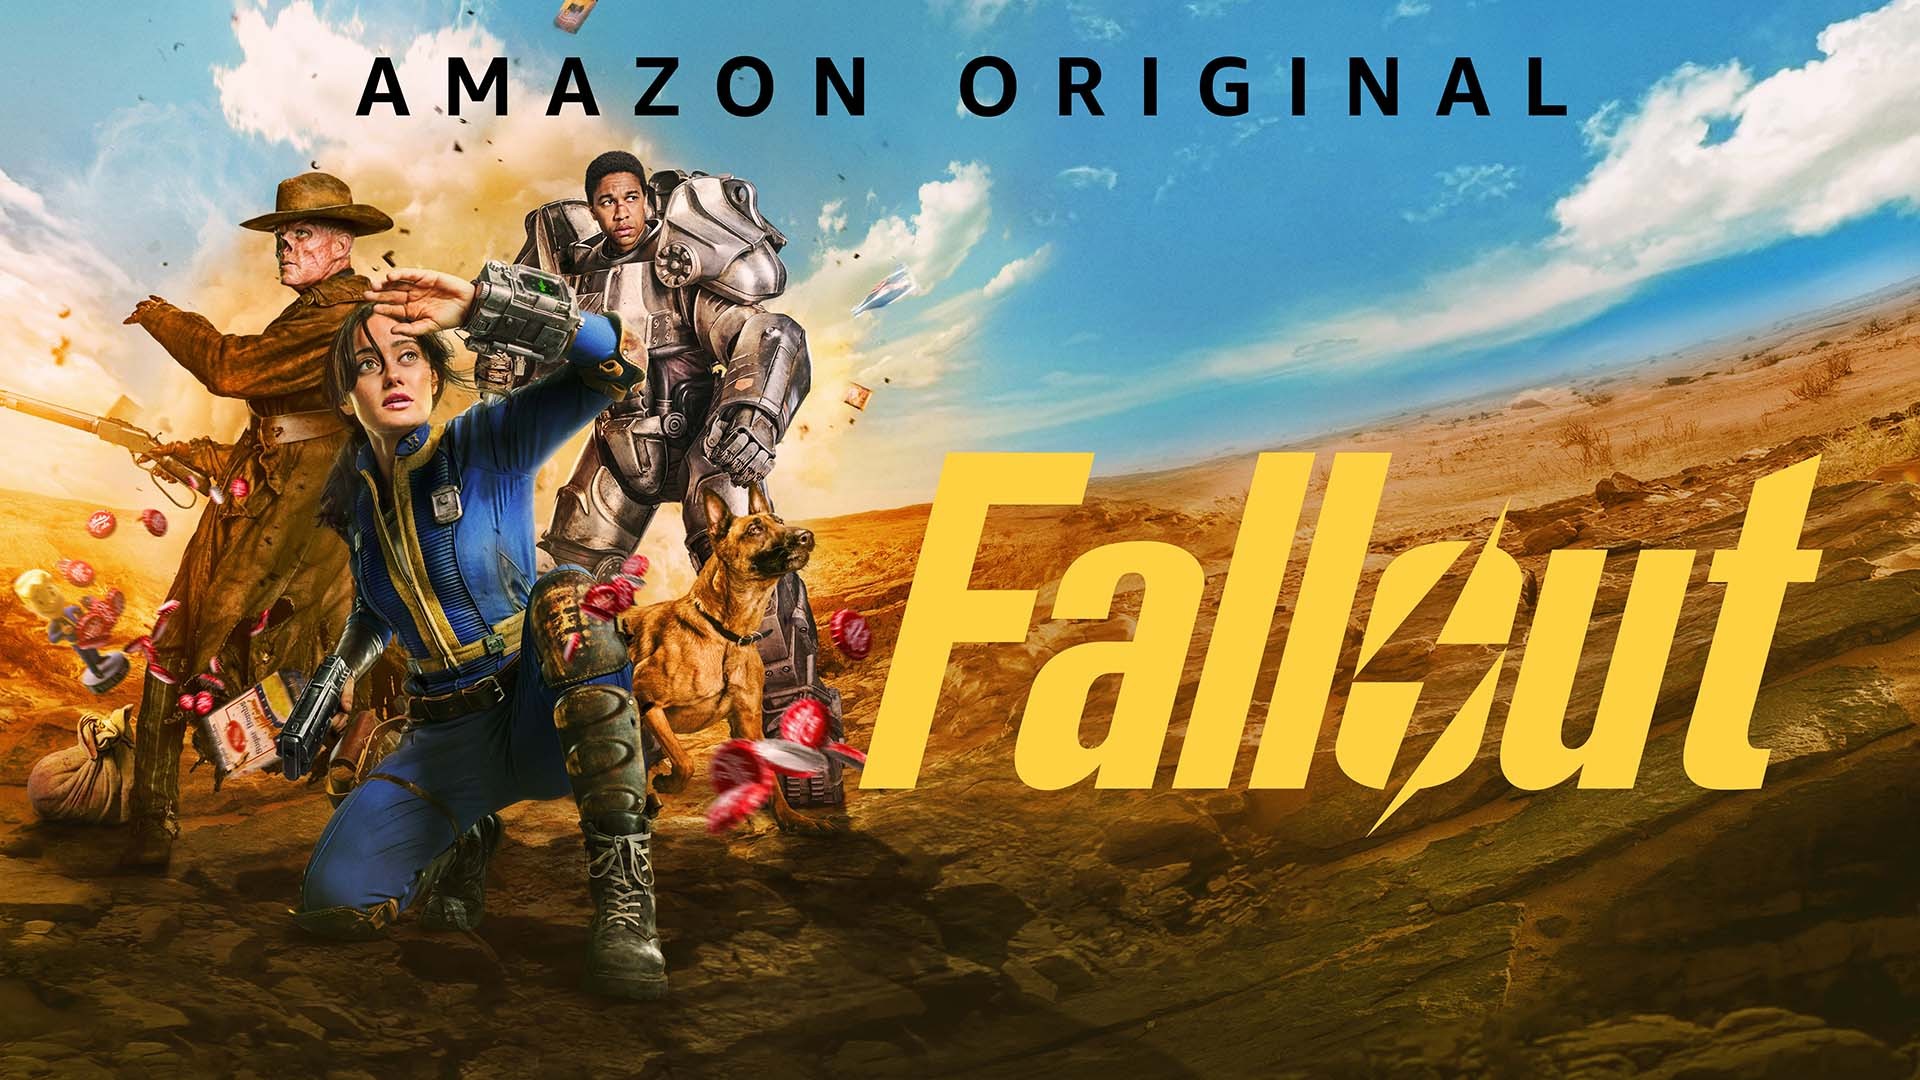 Stream Amazon Original Fallout